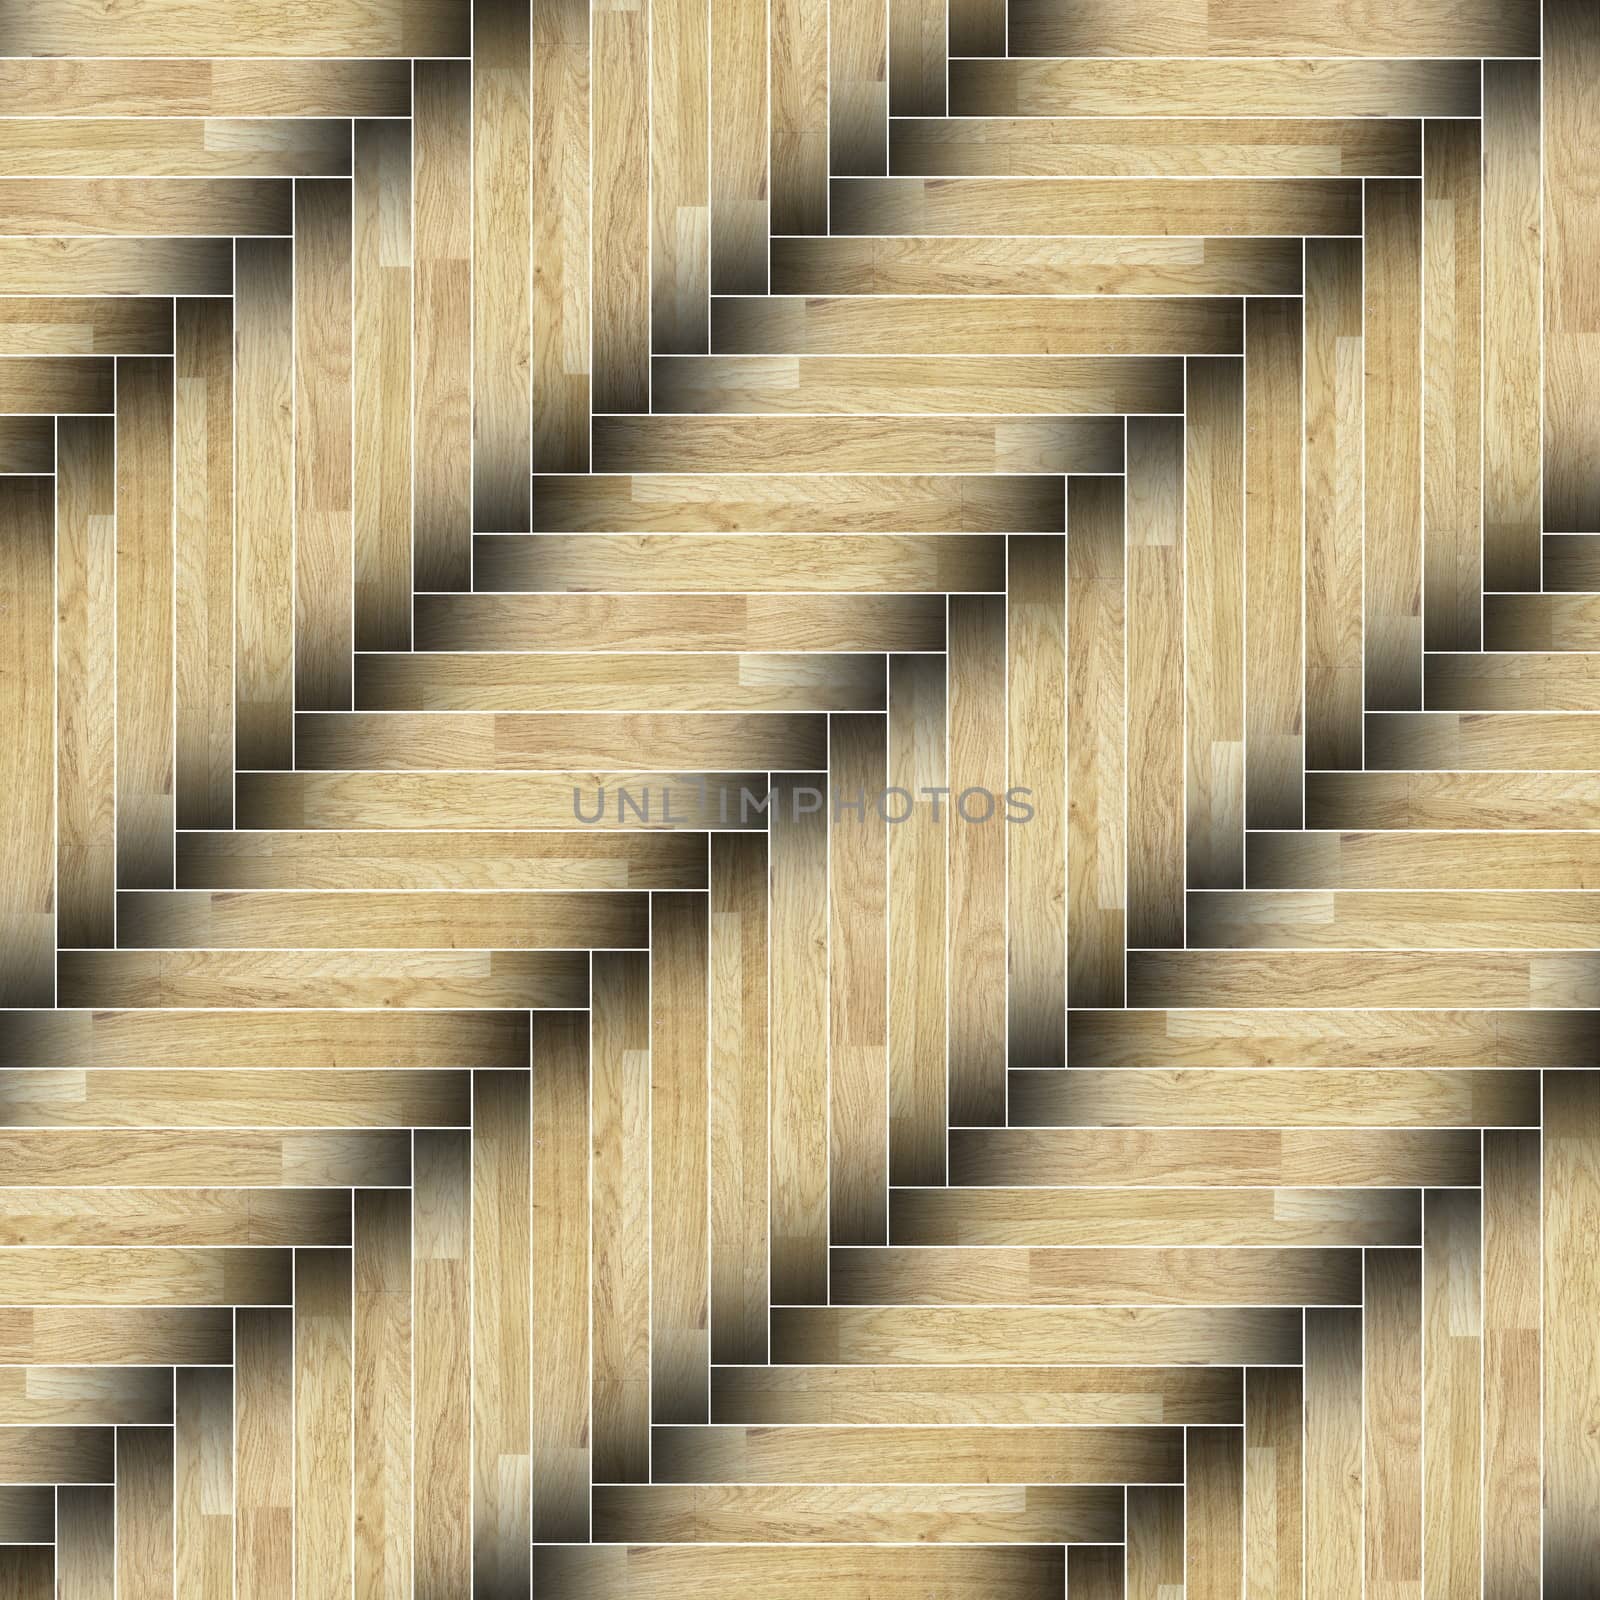 textured of installed parquet wooden planks  flooring